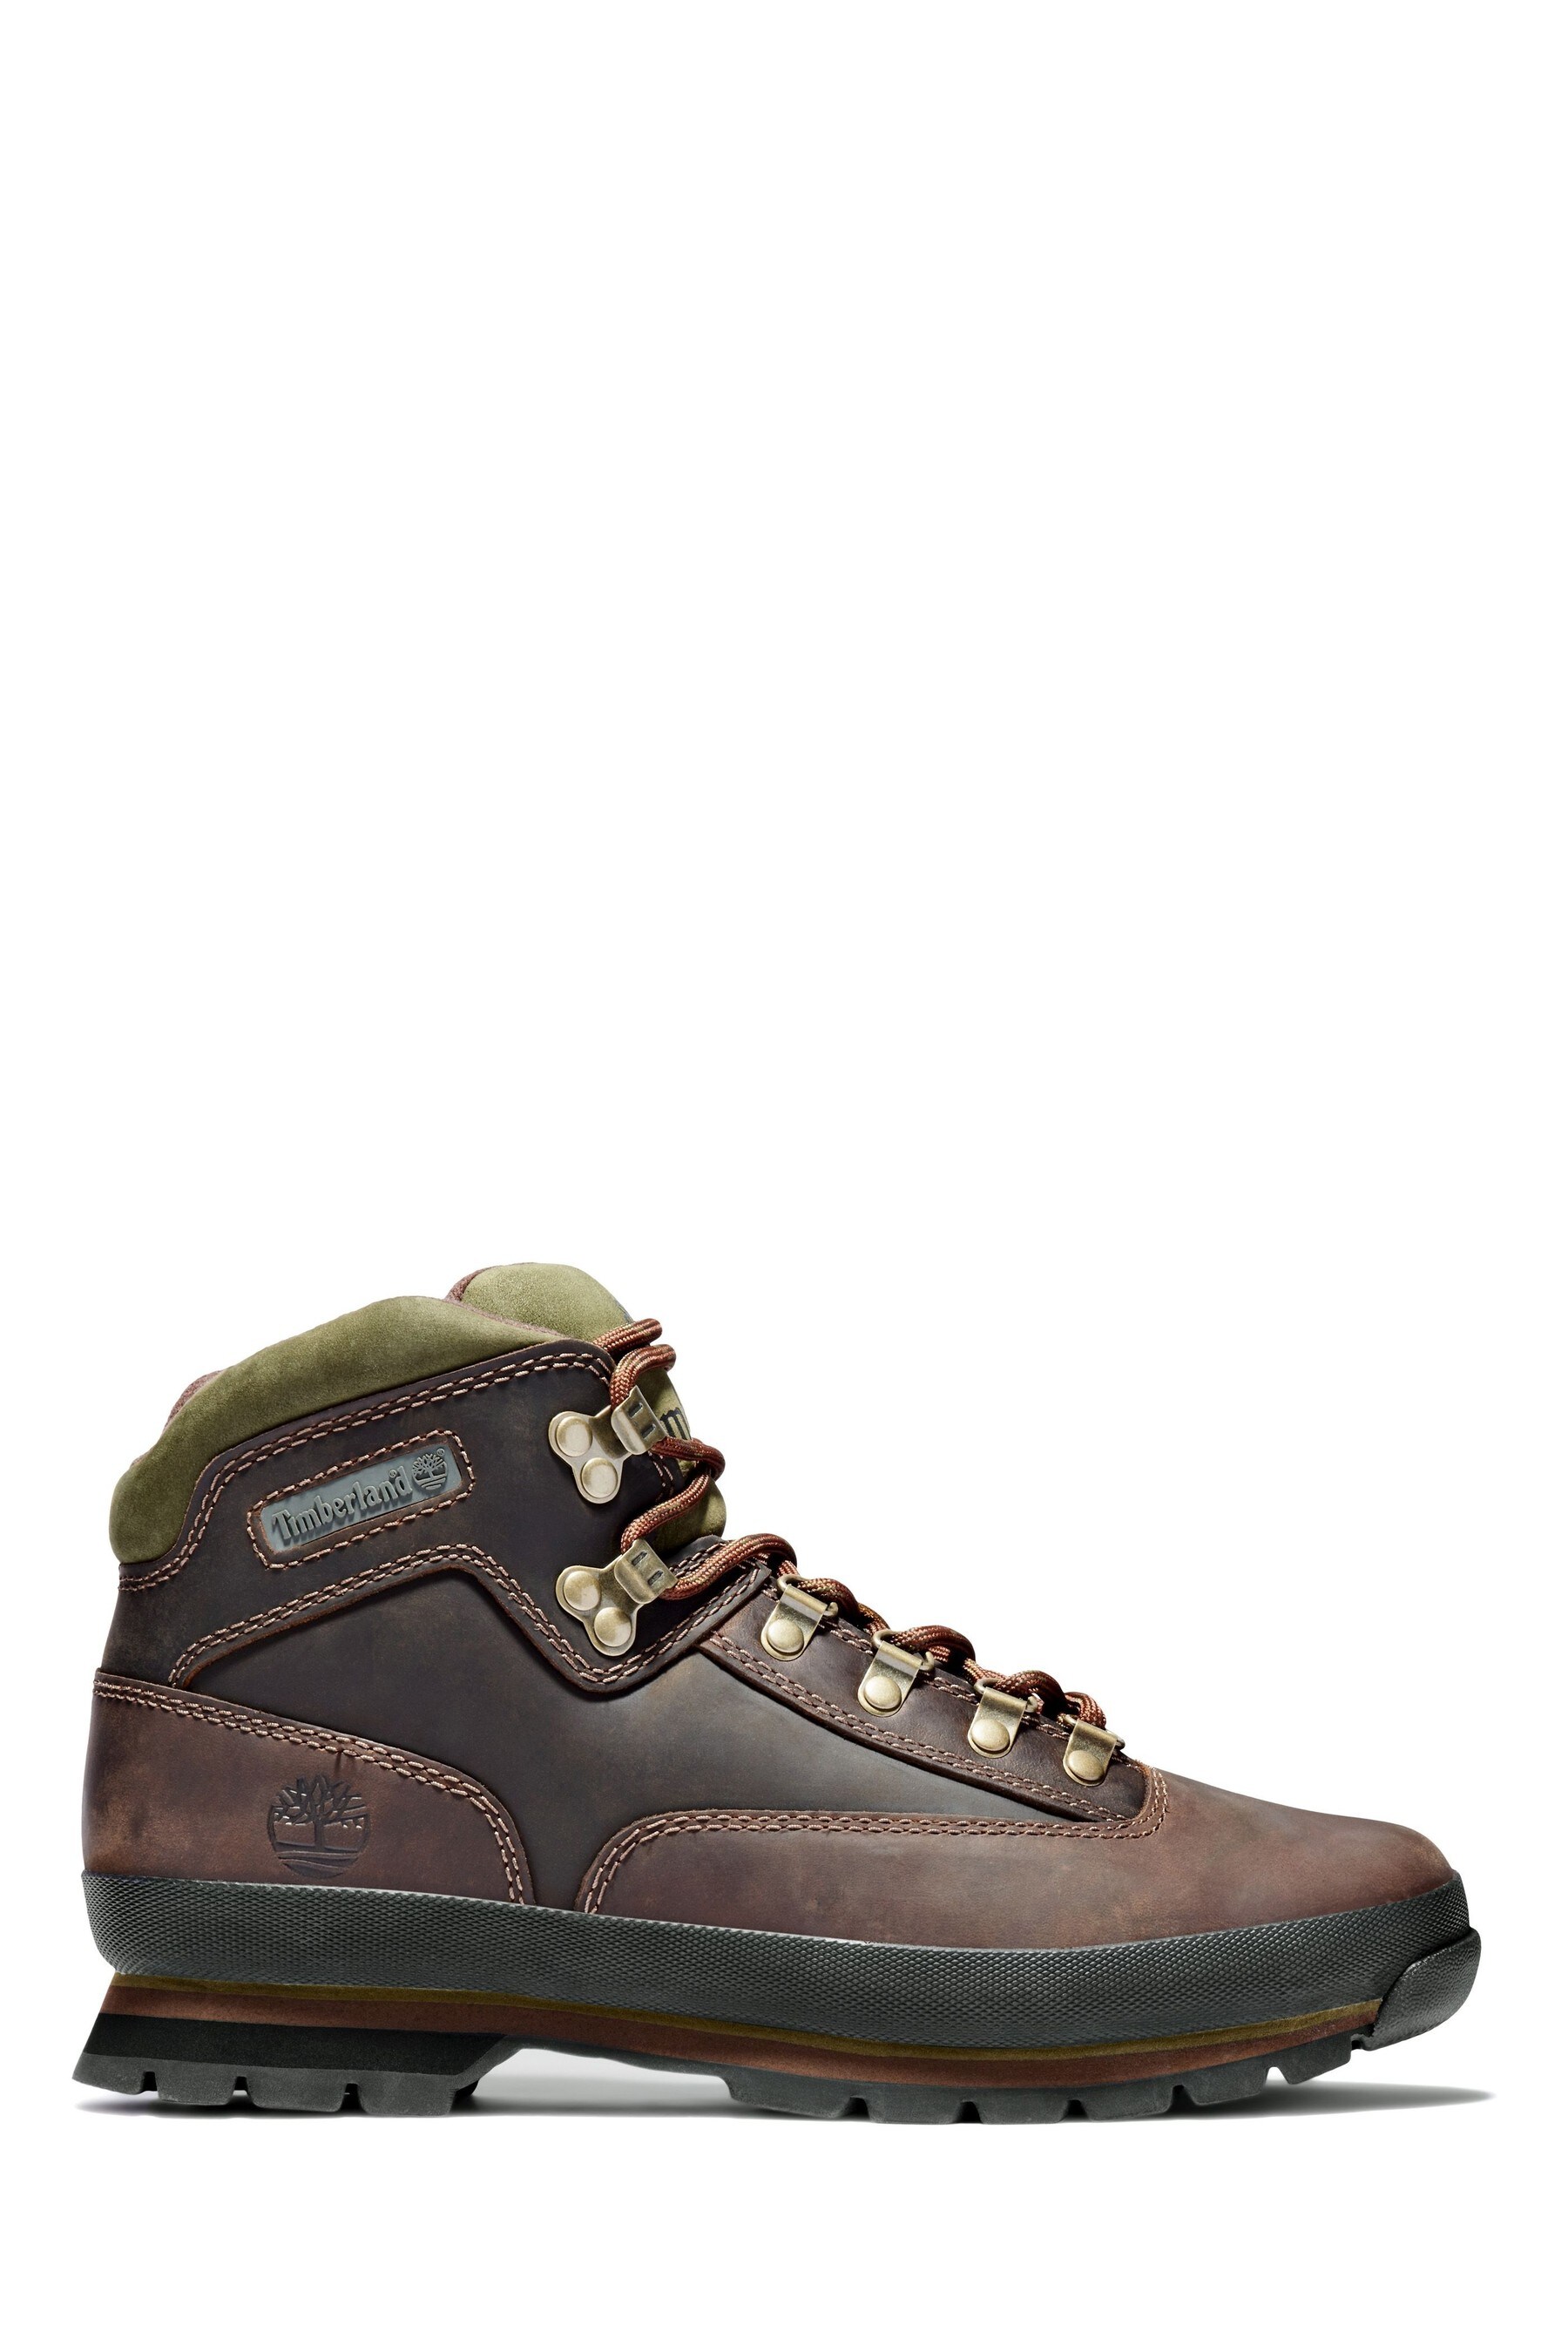 Евро походная обувь Timberland, коричневый